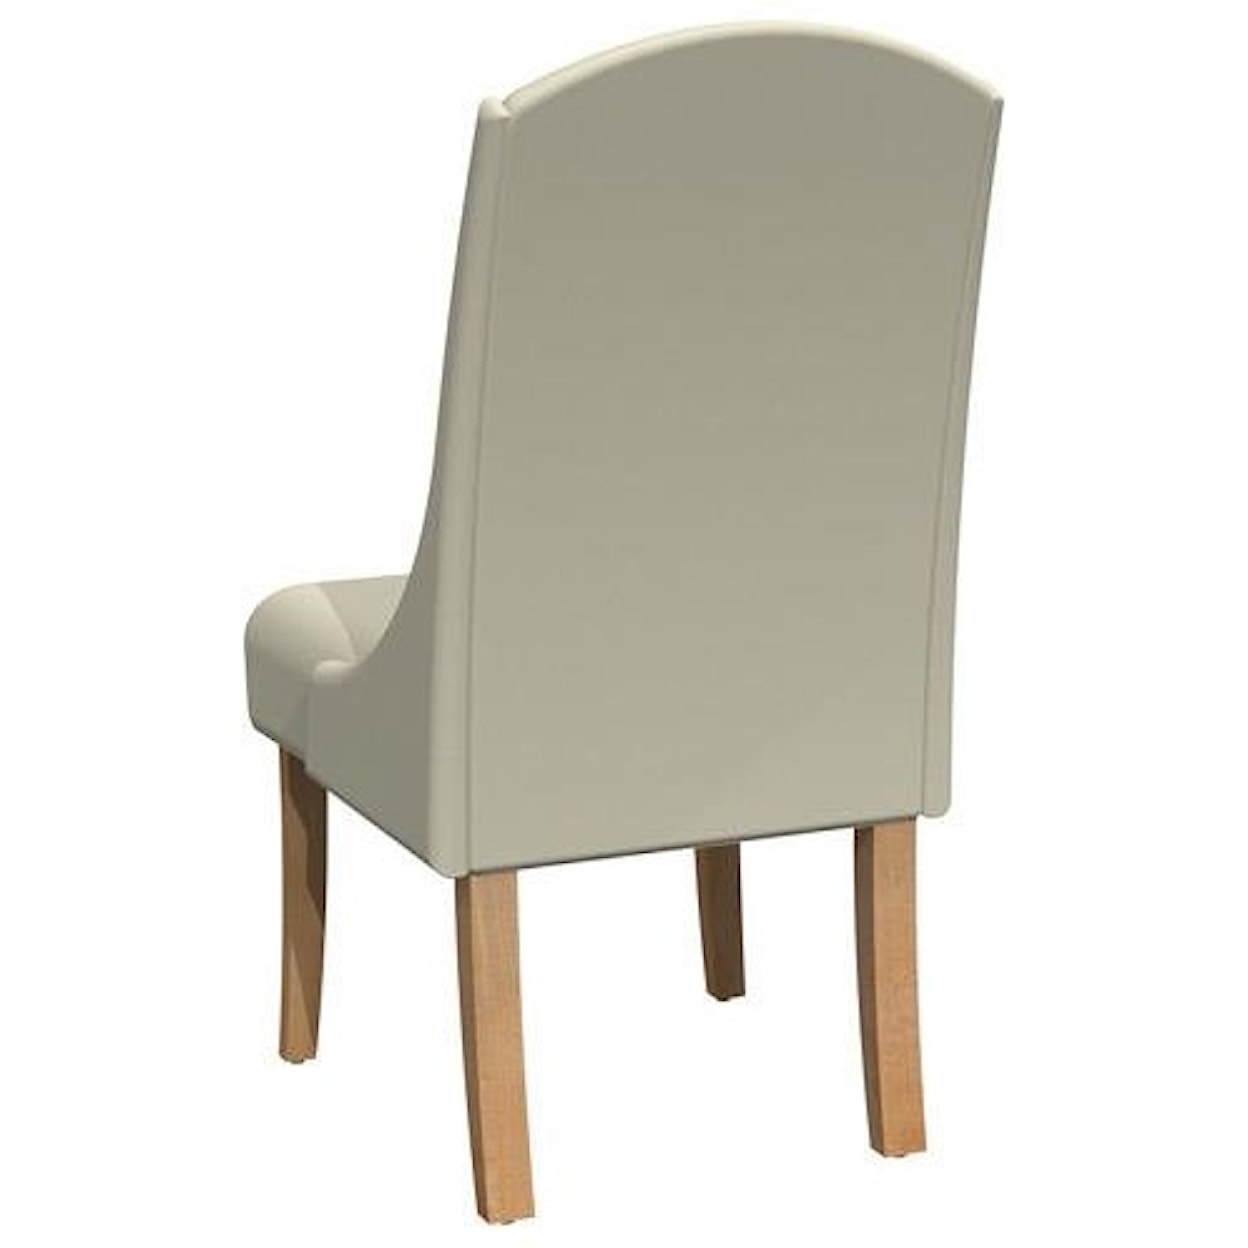 Bermex C-1696 Chair